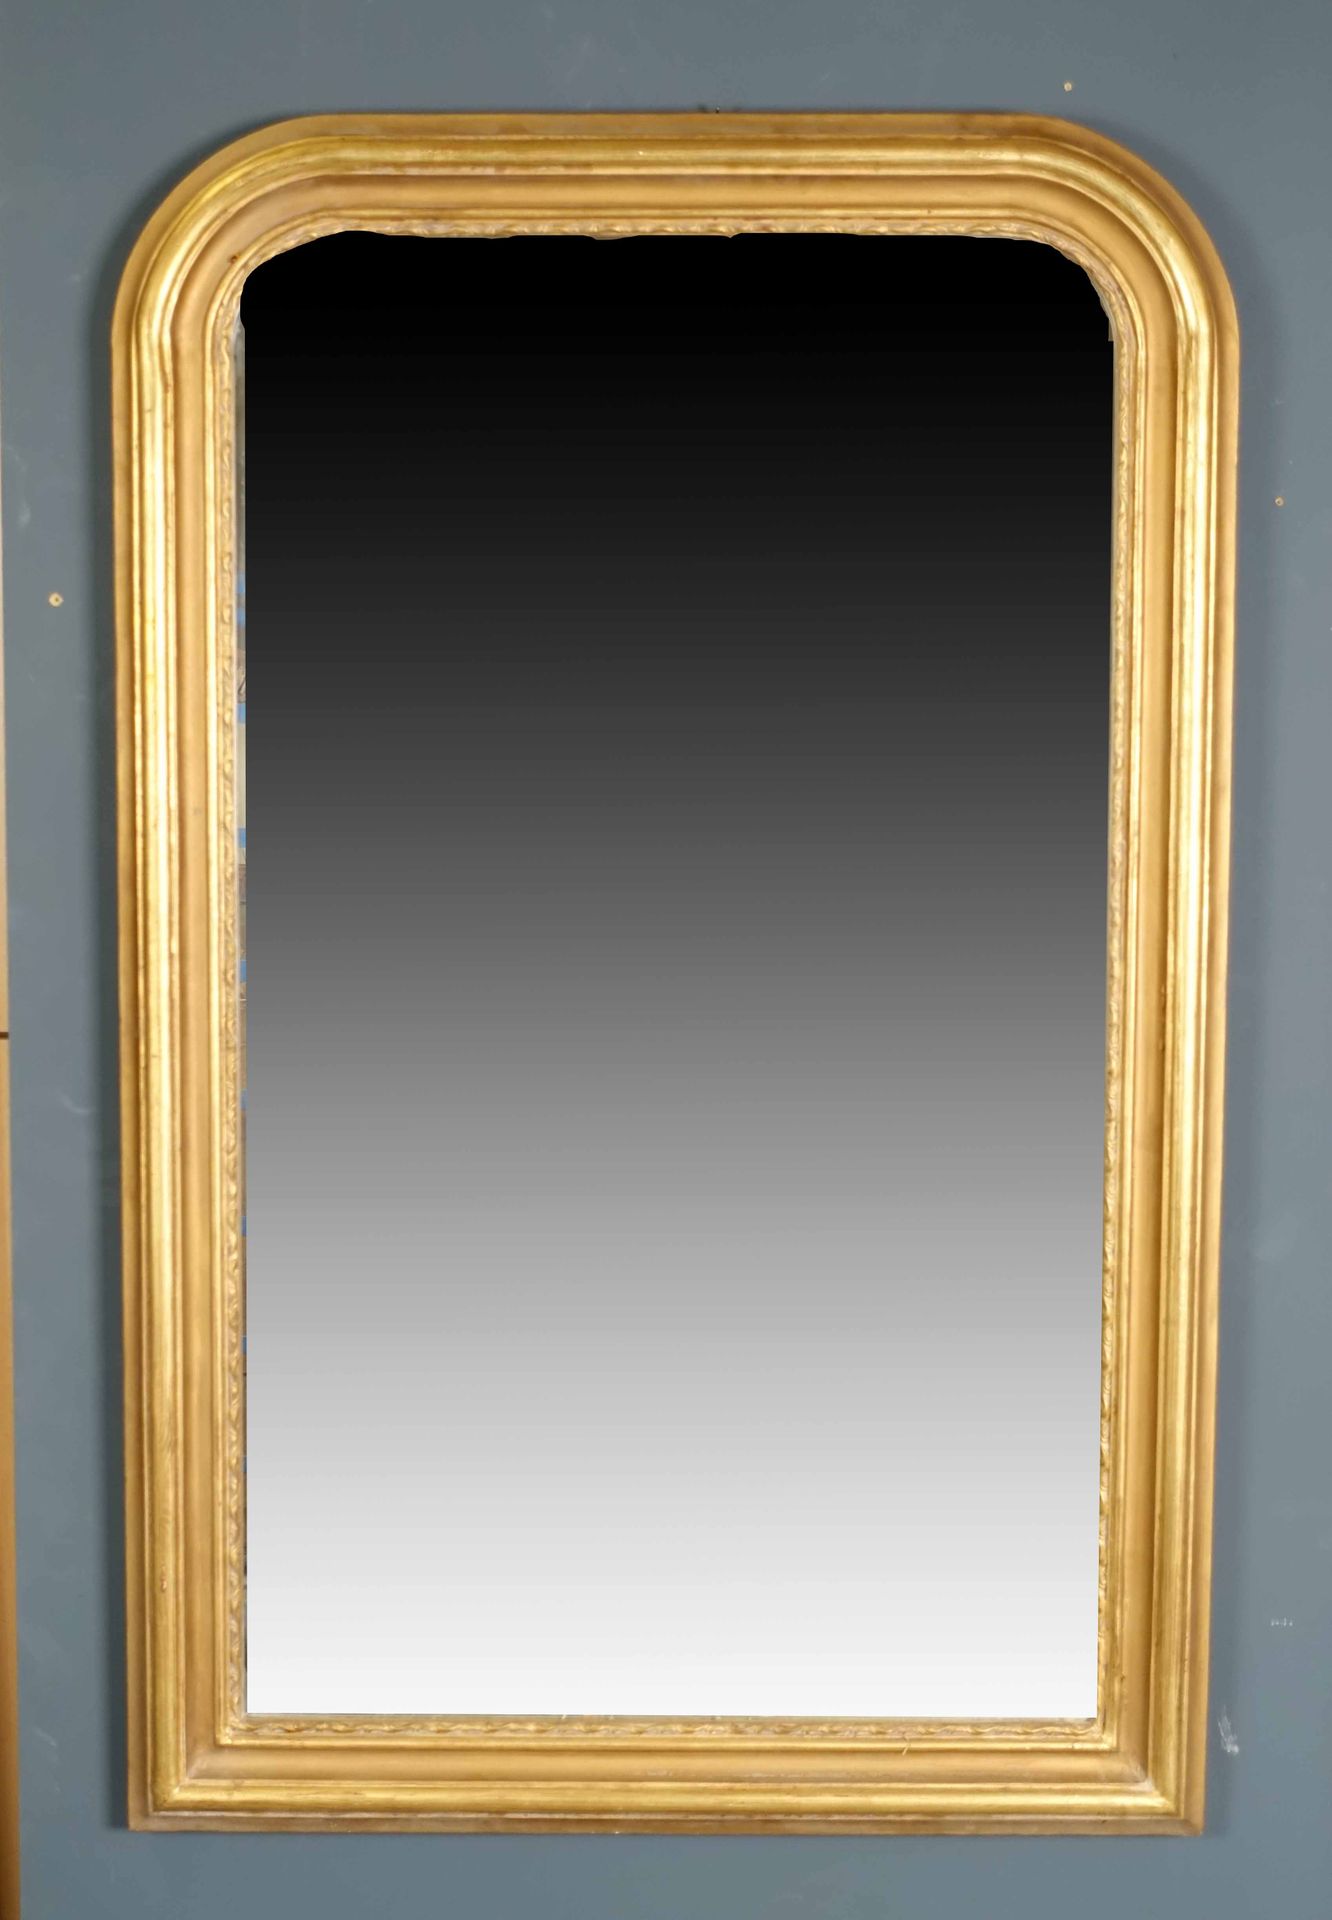 Miroir de Cheminée. Encadrement mouluré. Bois doré. Dimensions : 137 x 91 cm.